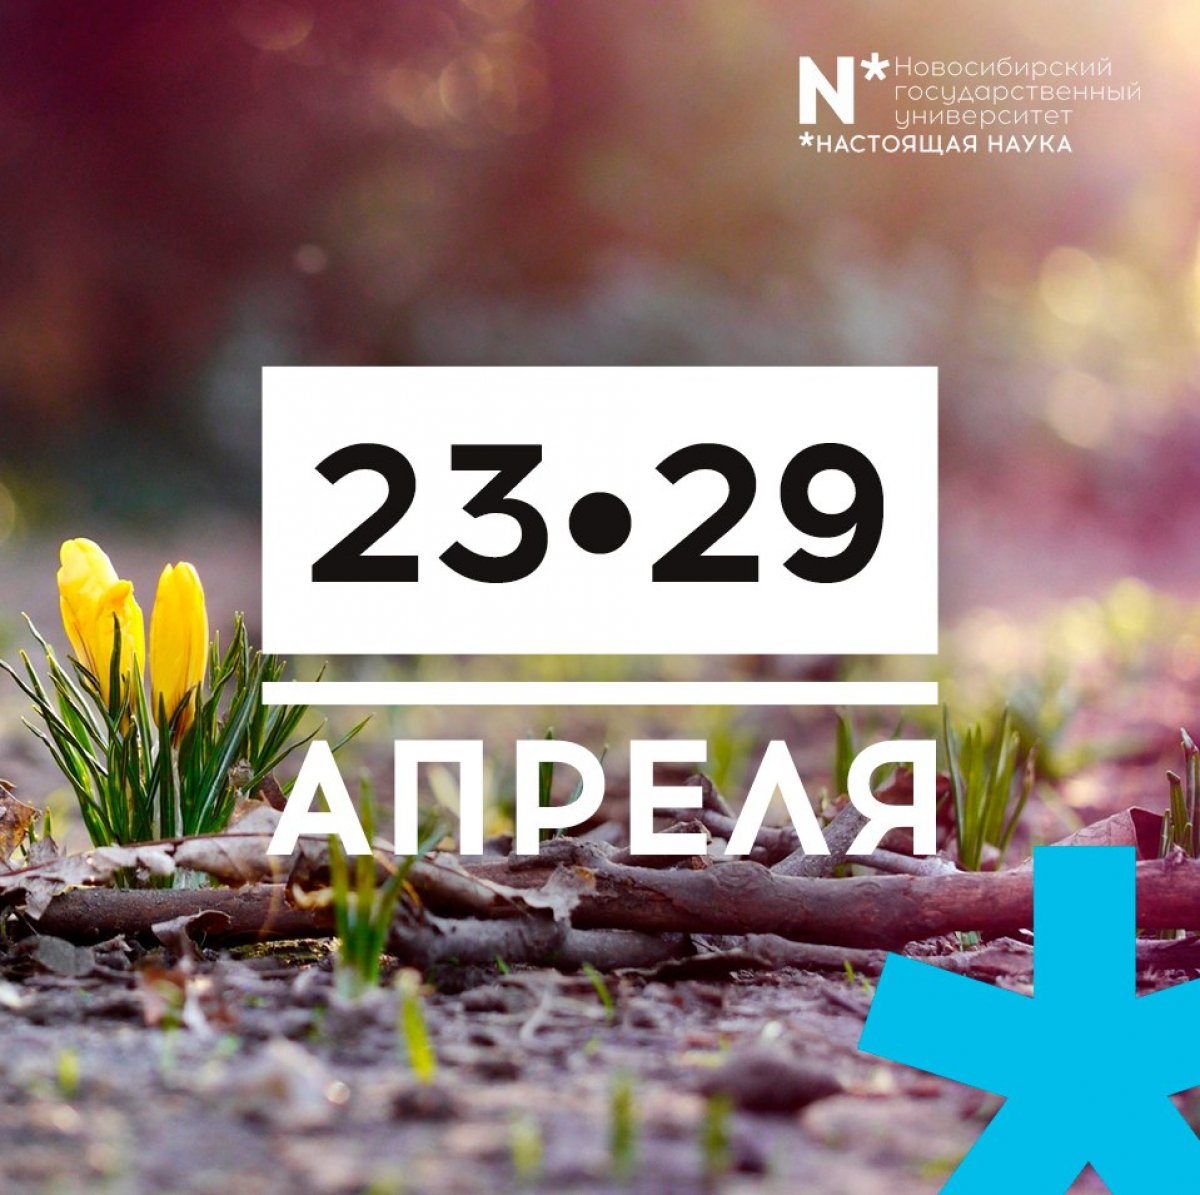 дайджест🤗 Не забывайте, что с апреля начинается МНСК-2018, а с 23 апреля в НГУ стартует